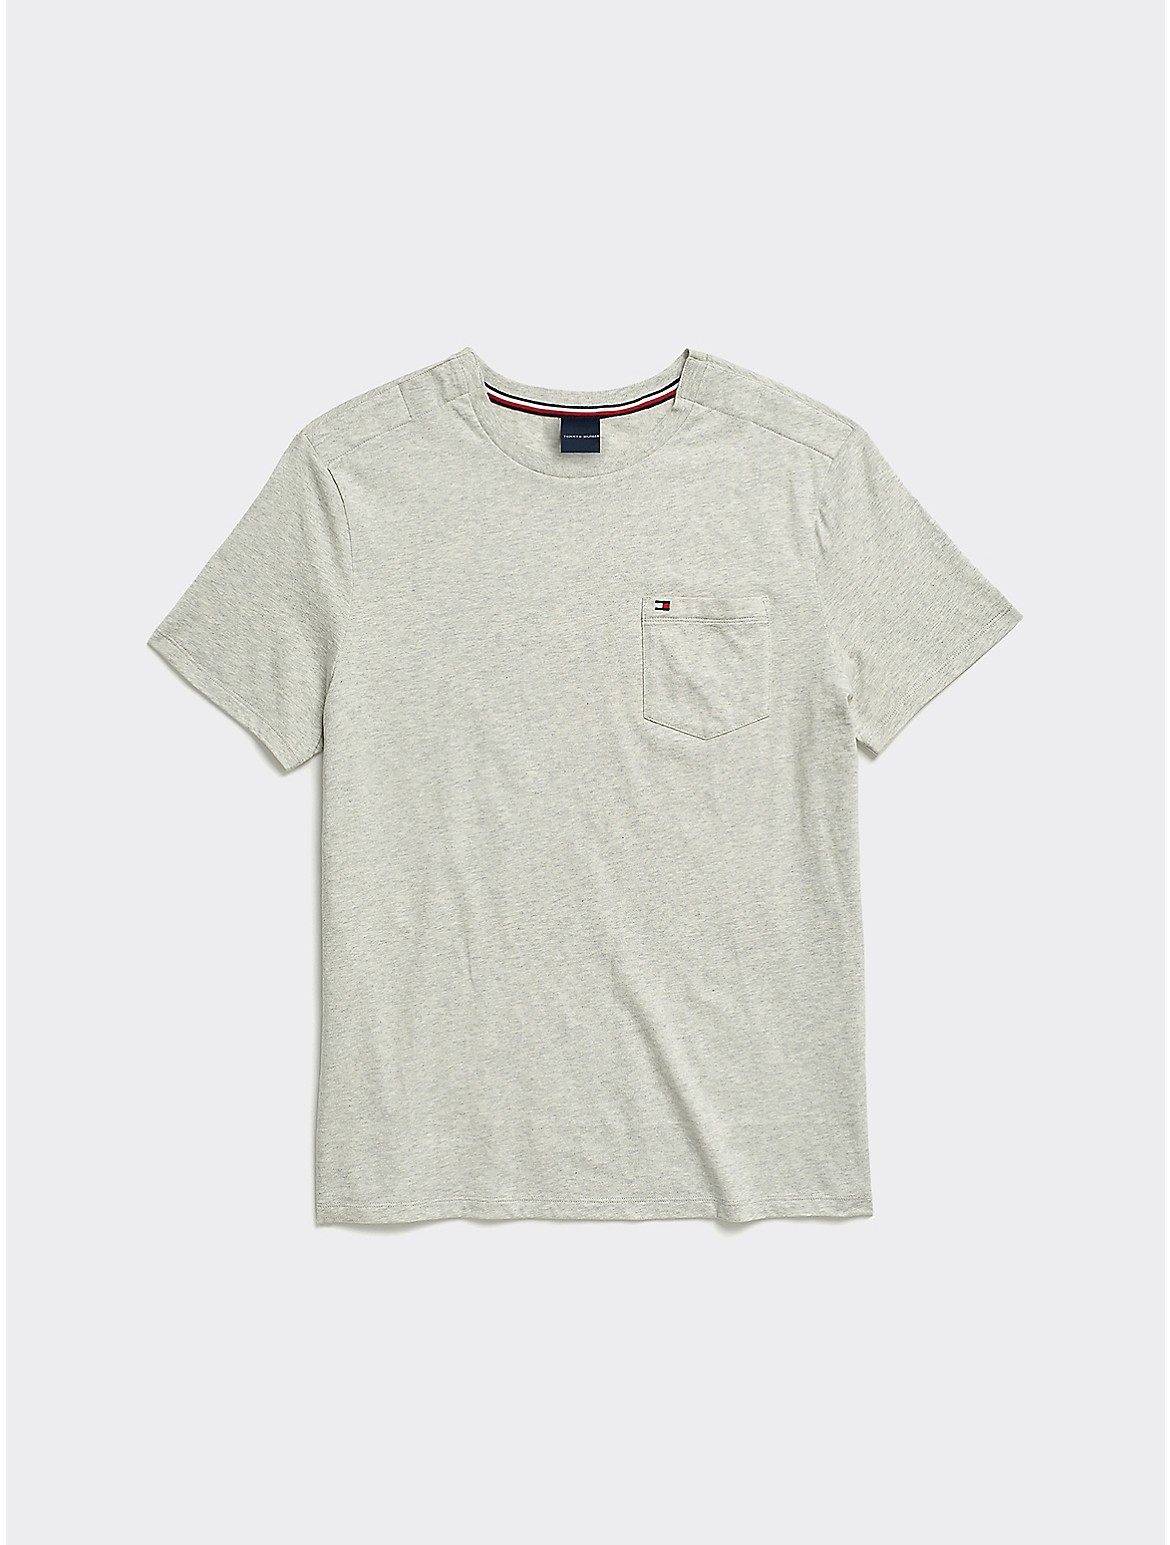 Tommy Hilfiger Men's Heathered Pocket T-Shirt